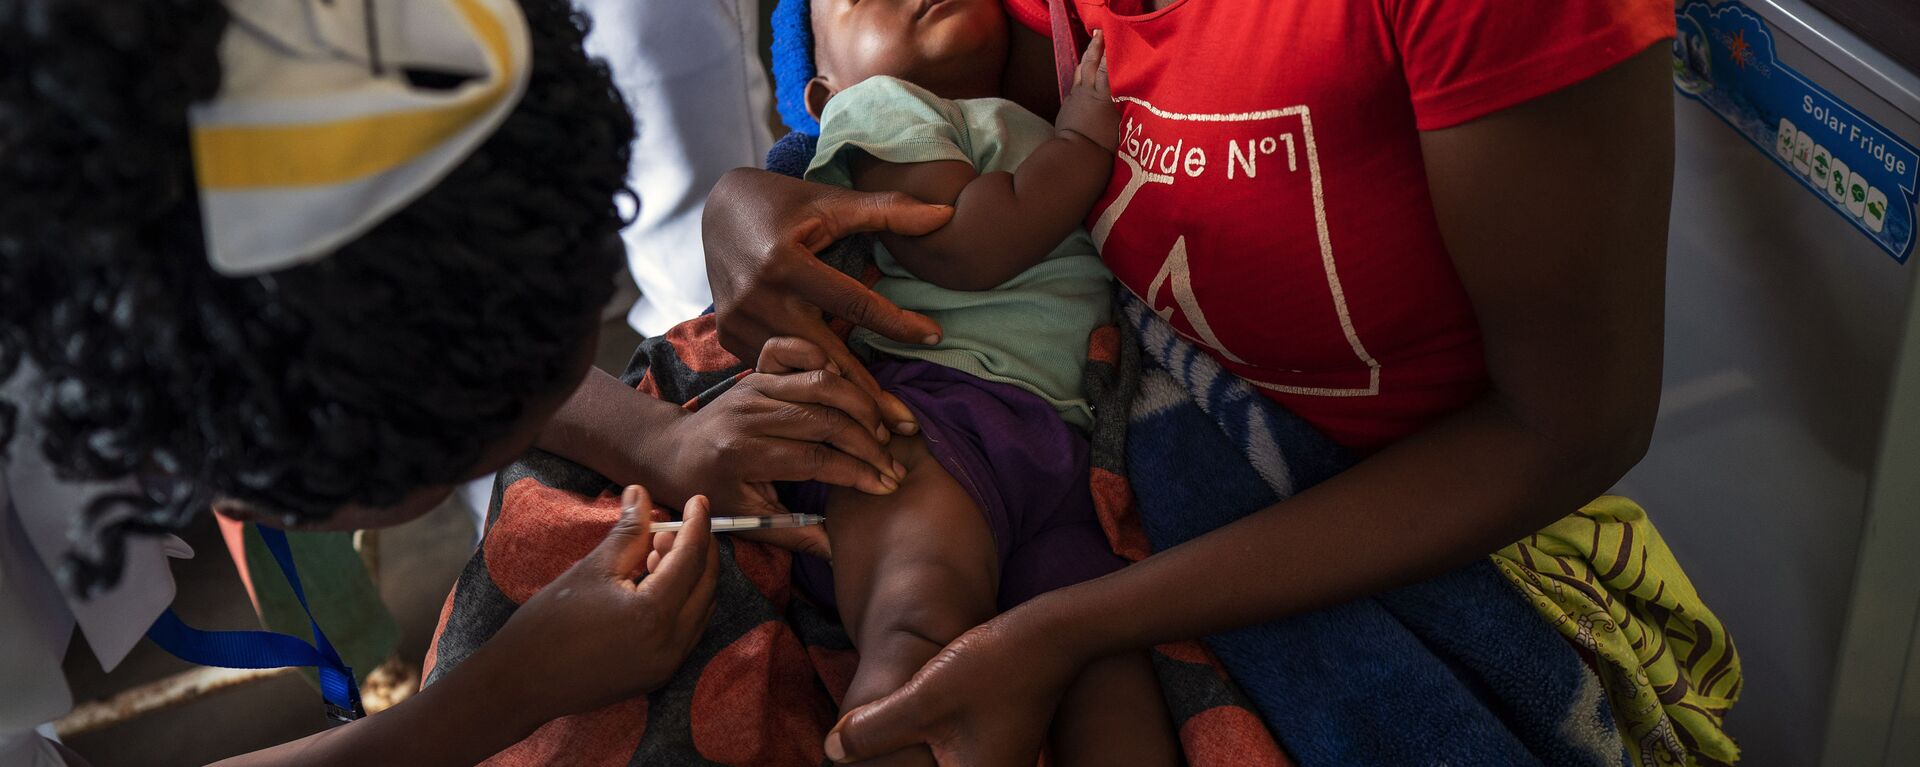 Un bebé es vacunado contra la malaria en Malaui - Sputnik Mundo, 1920, 25.04.2020